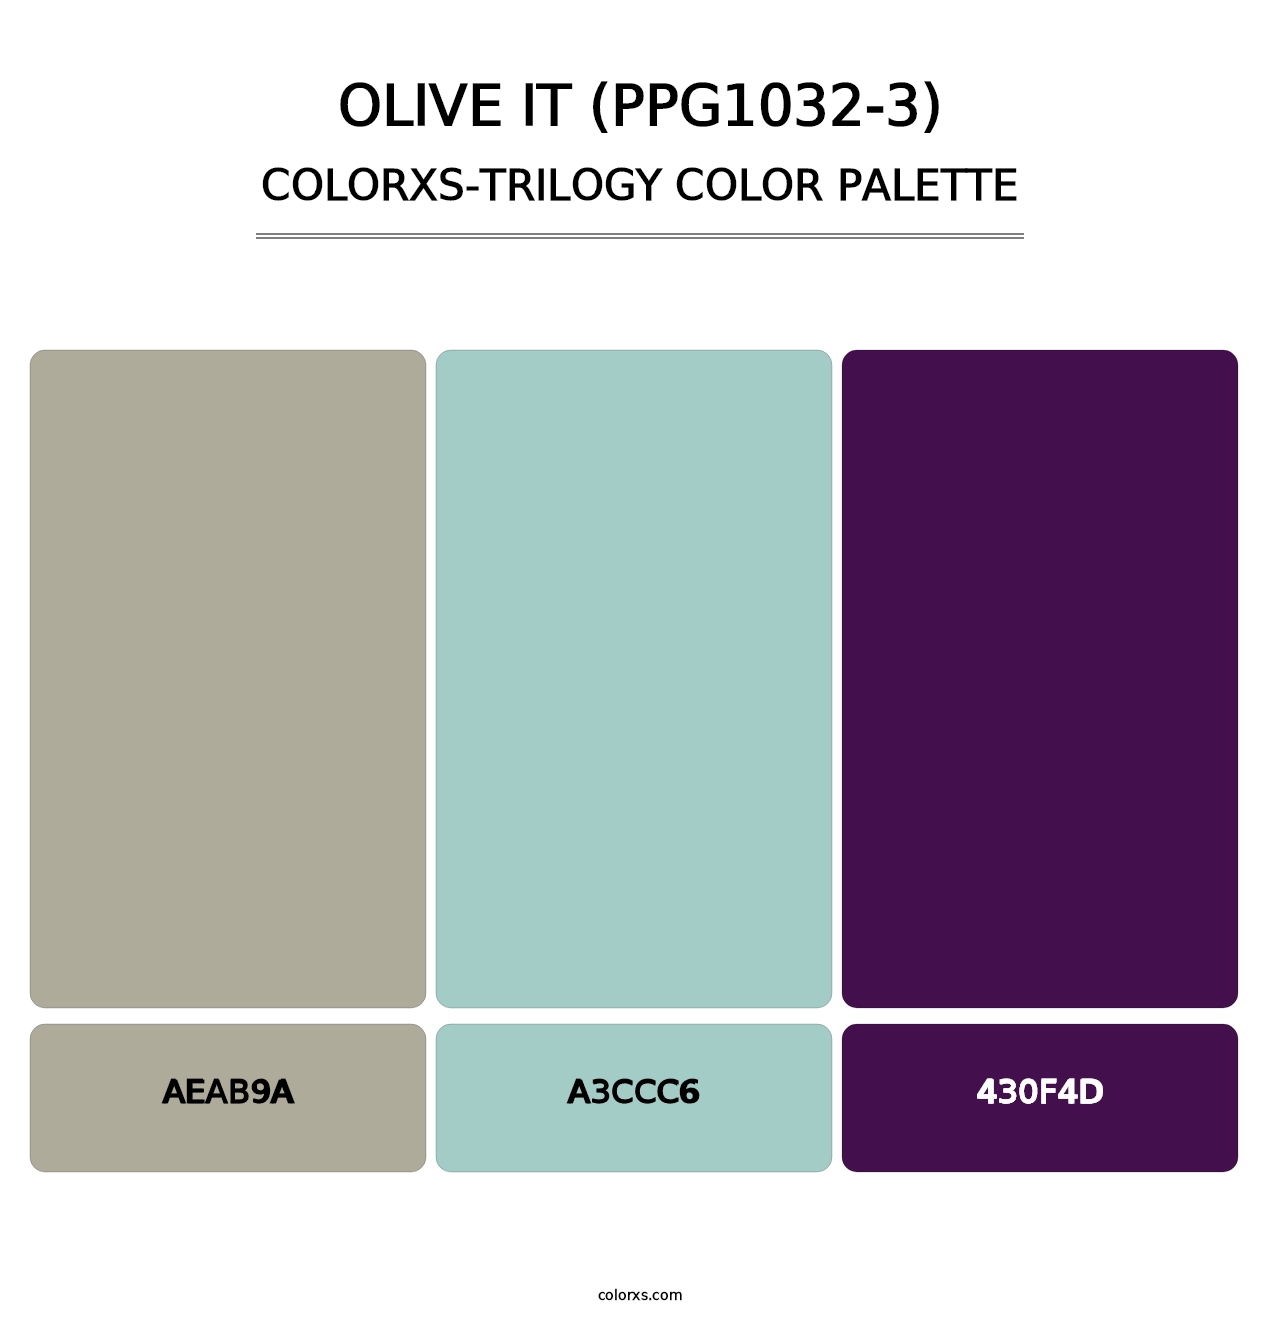 Olive It (PPG1032-3) - Colorxs Trilogy Palette